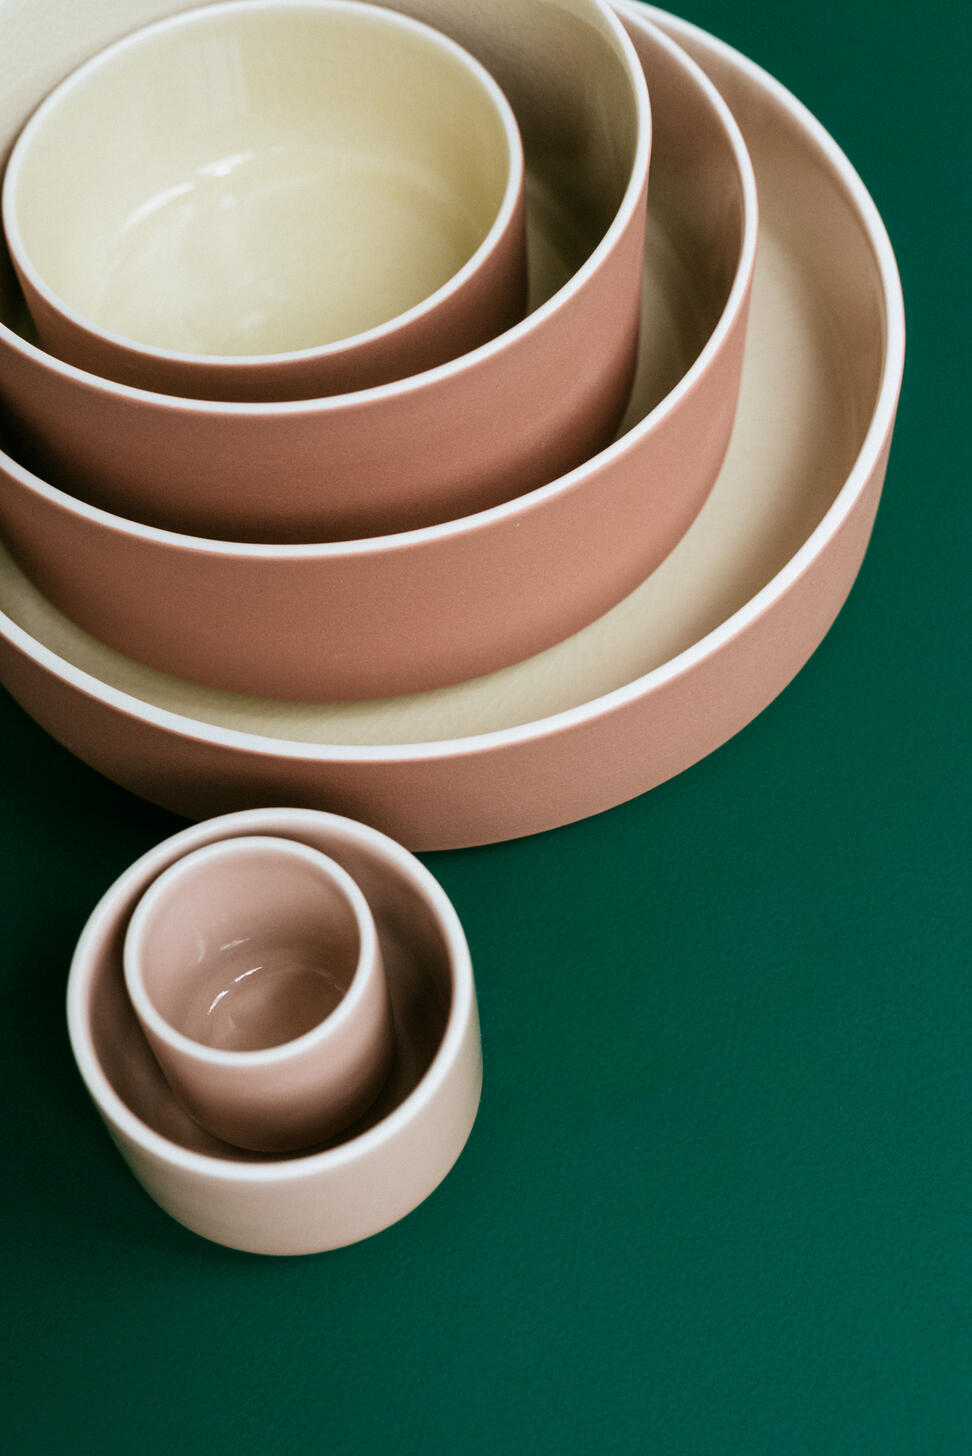 plate s studio 2.0 écru.terracotta ceramic manufacturer